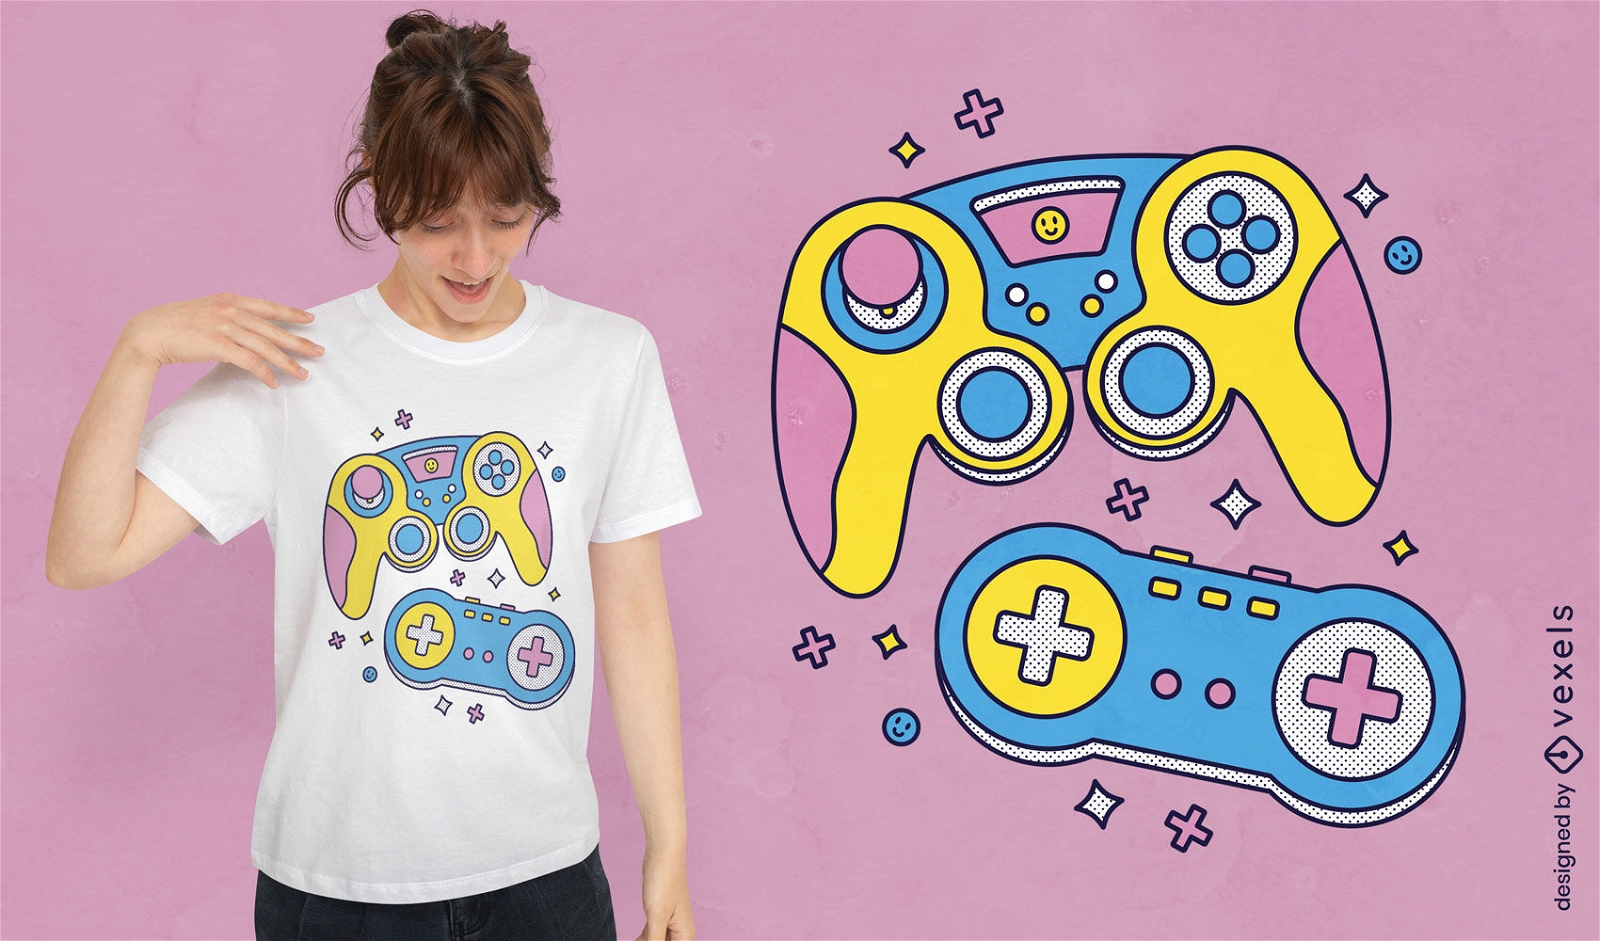 Diseño de camiseta de joysticks de juego.